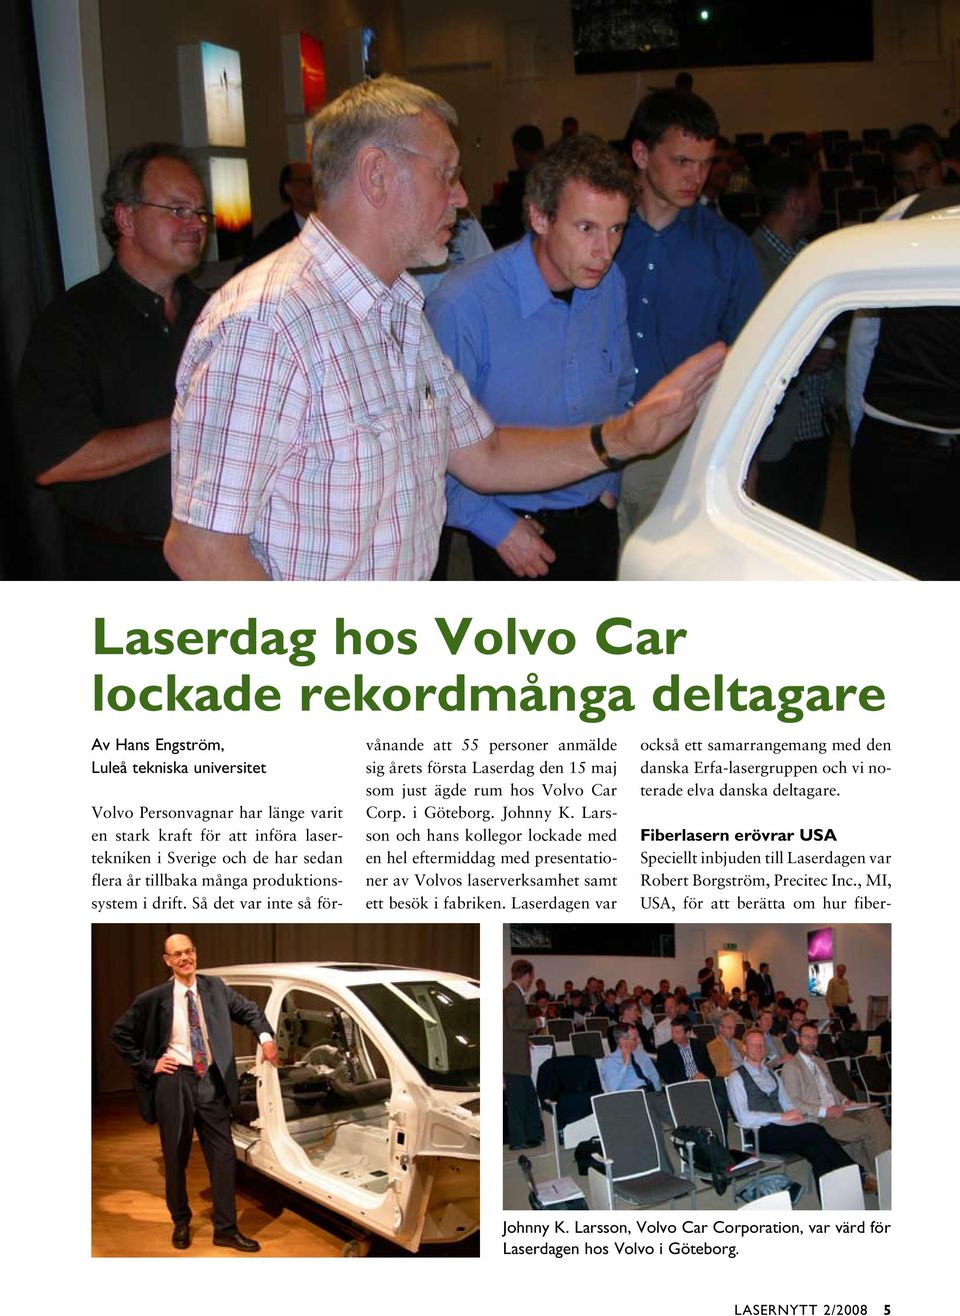 Johnny K. Larsson och hans kollegor lockade med en hel eftermiddag med presentationer av Volvos laserverksamhet samt ett besök i fabriken.